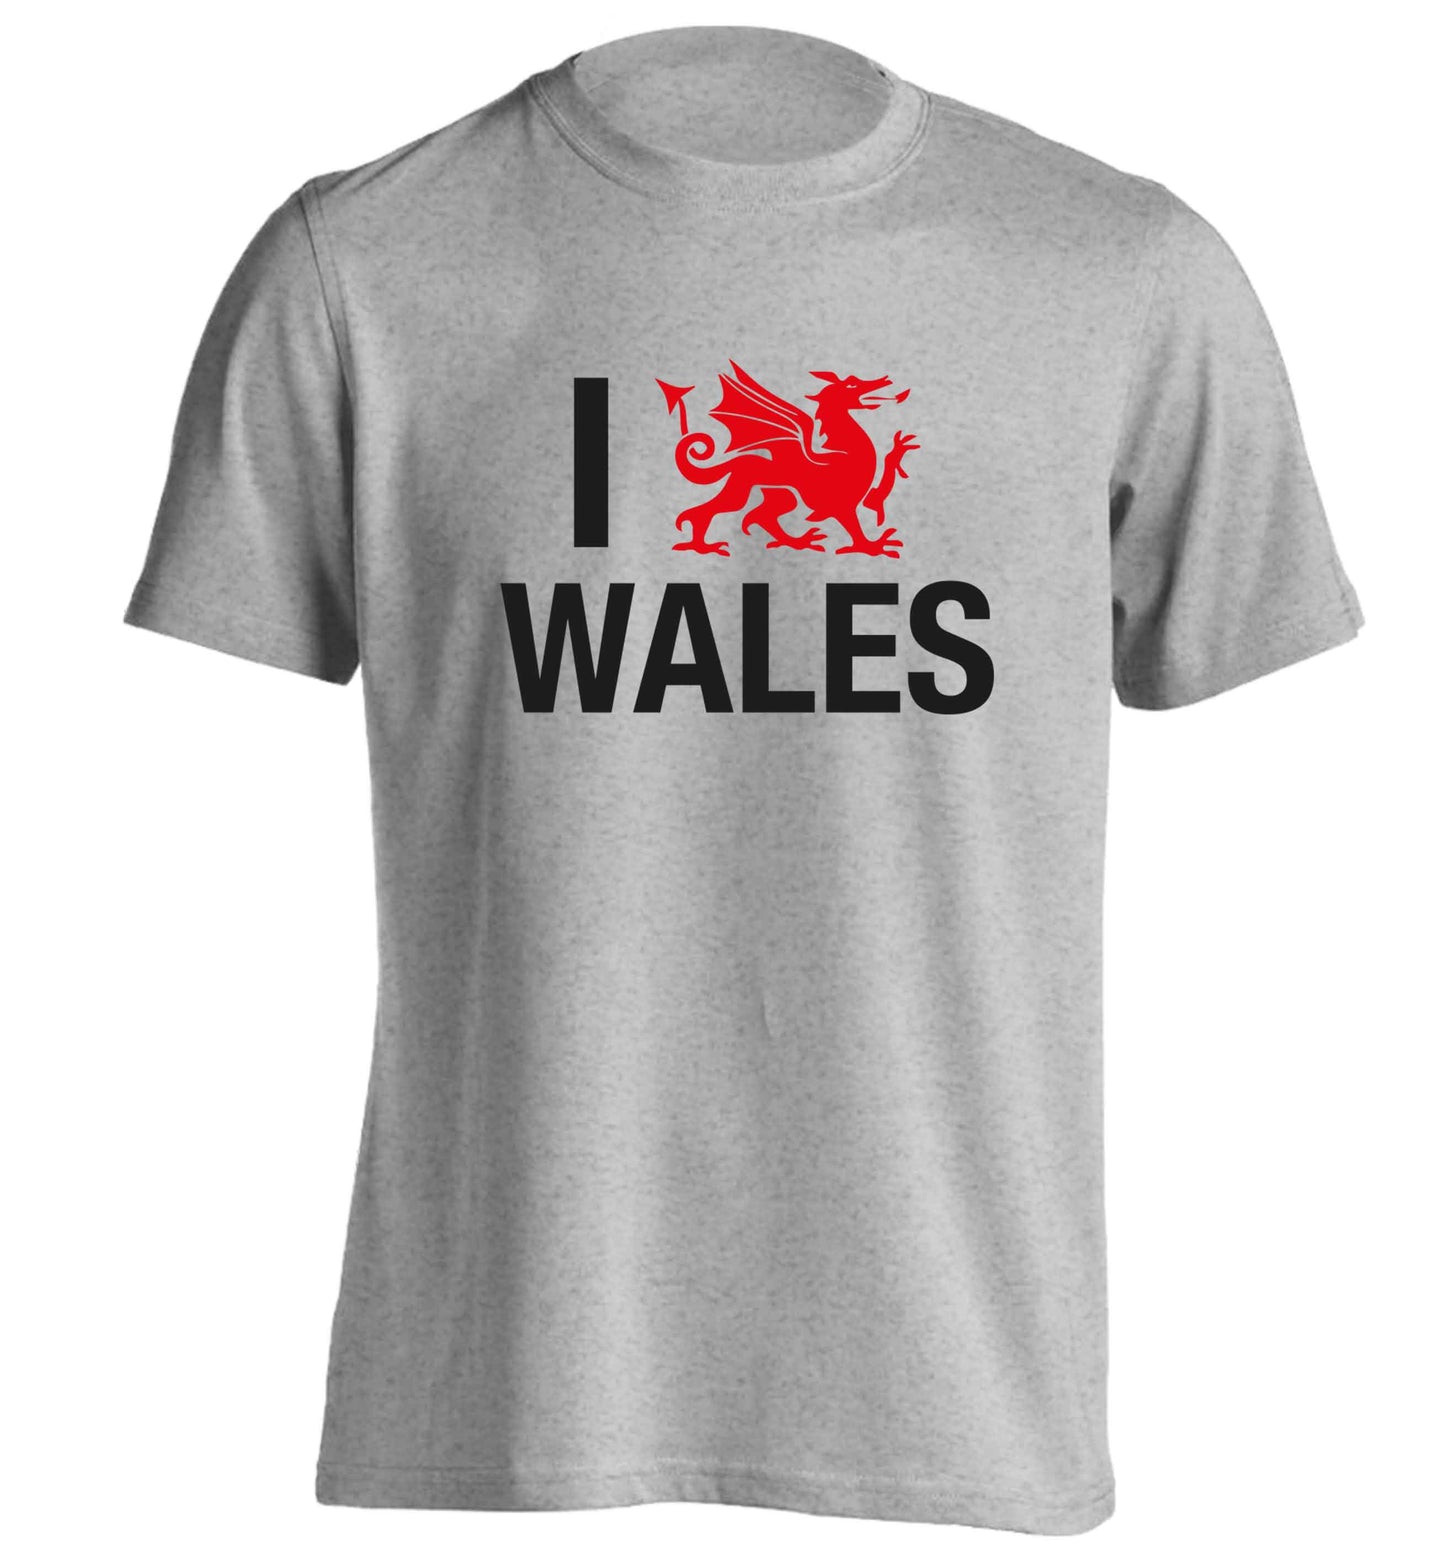 I love Wales adults unisex grey Tshirt 2XL